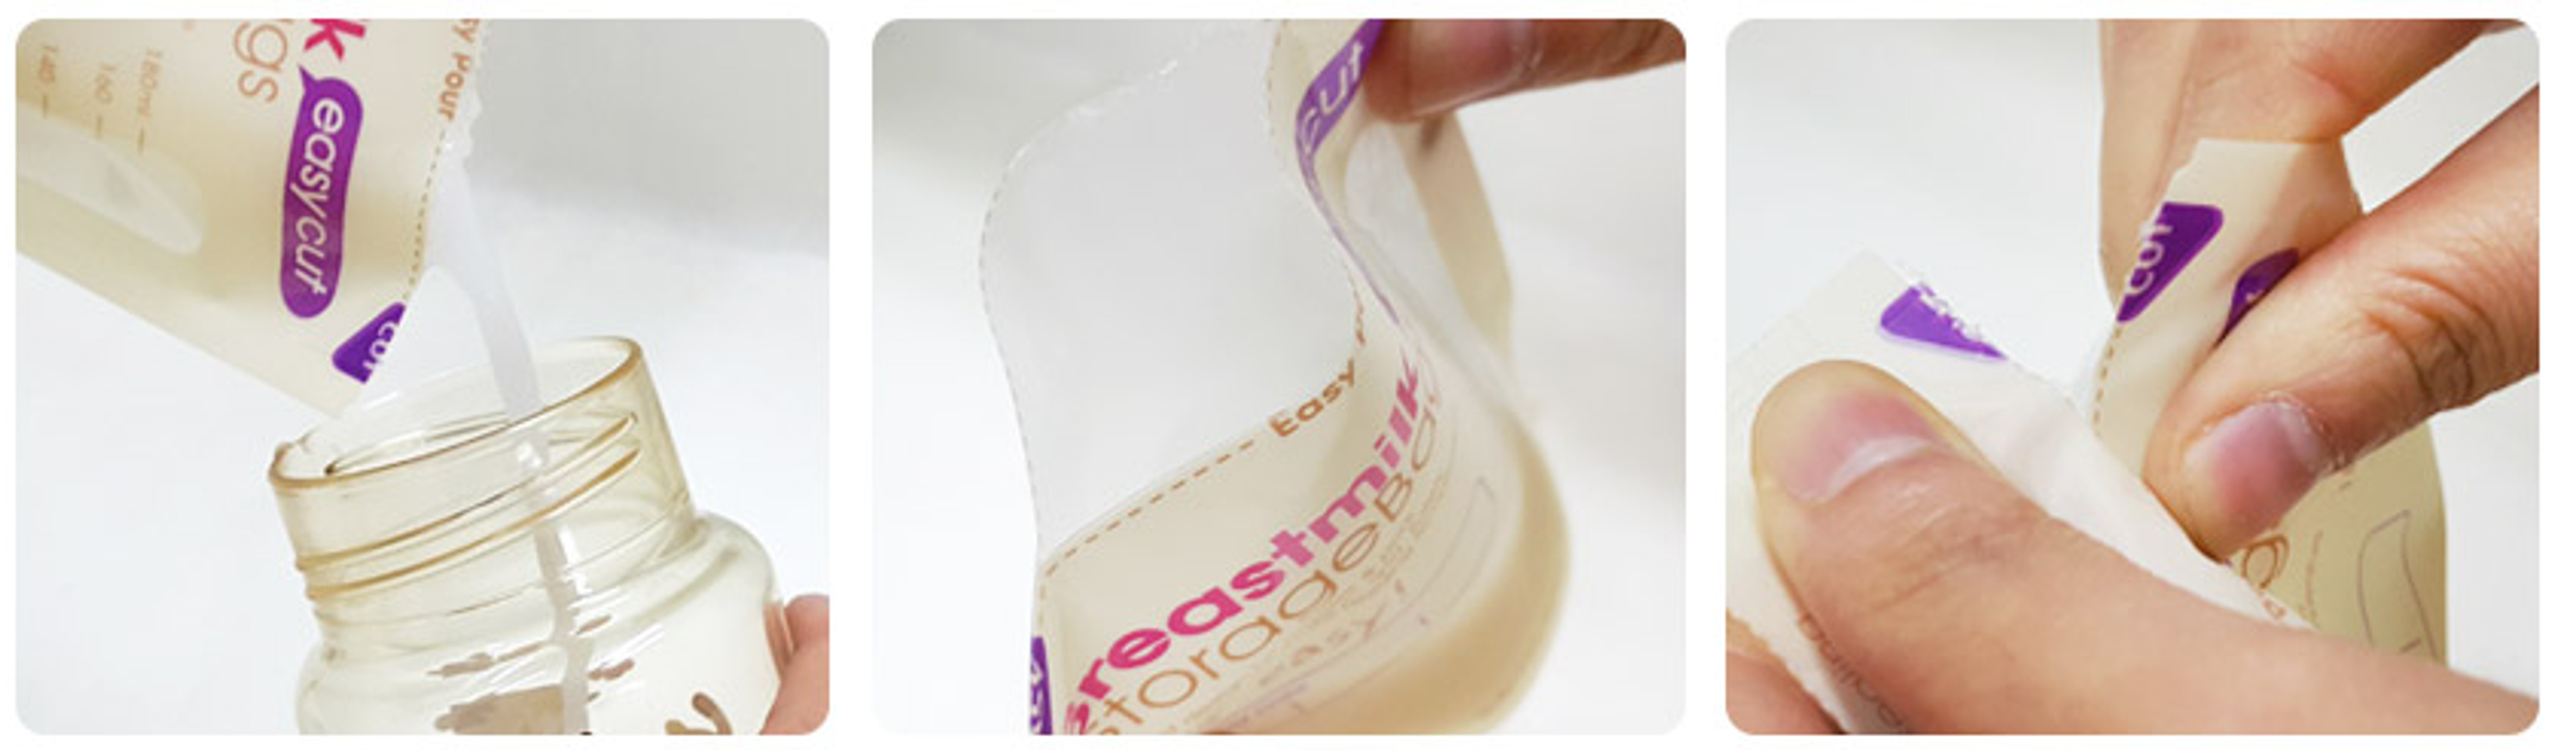 Túi trữ sữa MotherK cảm ứng nhiệt miệng cắt dễ dàng xé theo đường chỉ dẫn